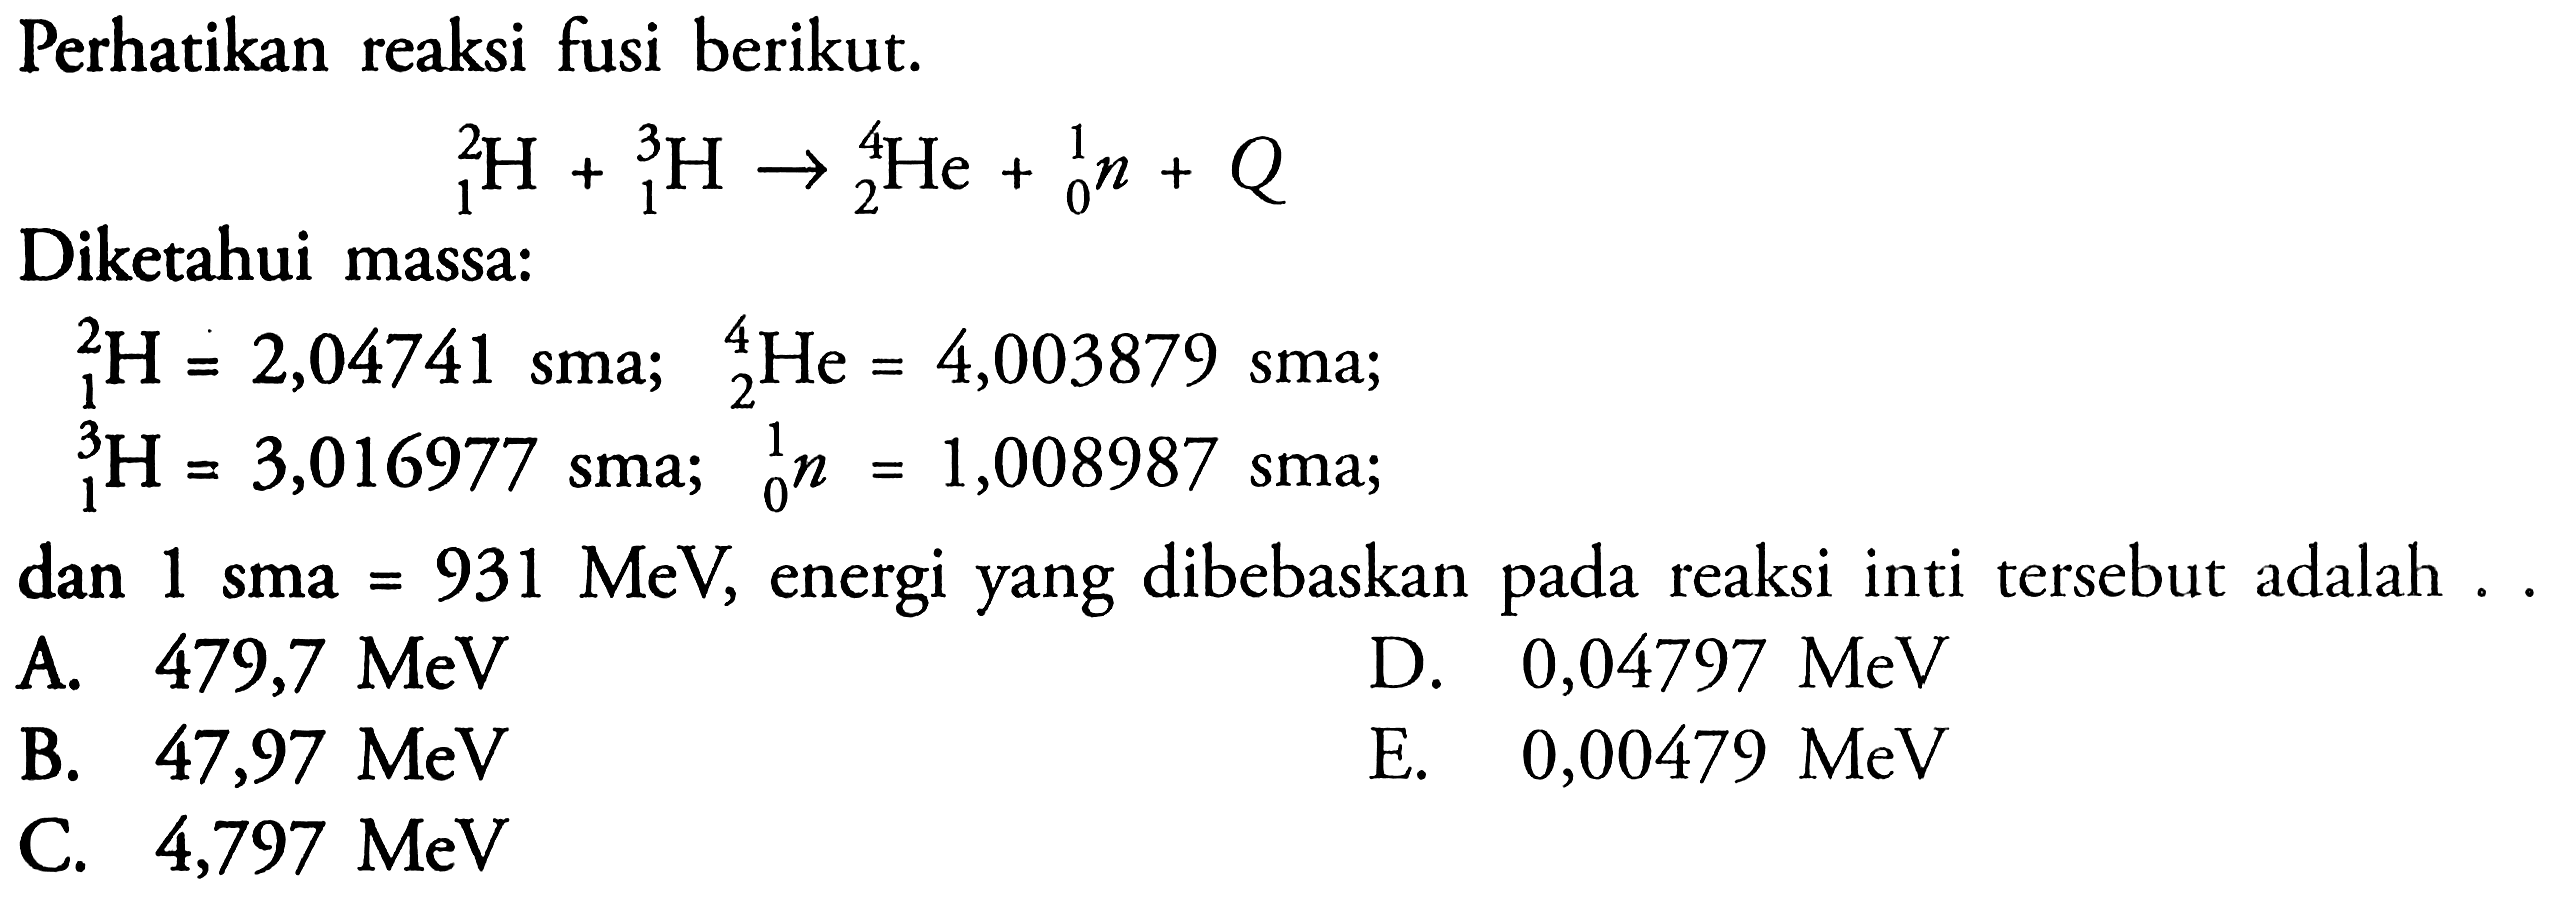 Perhatikan reaksi fusi berikut.2 1 H + 3 1 H -> 4 2 He + 1 0 n + QDiketahui massa:2 1 H = 2,04741  sma; 4 2 He=4,003879  sma;  3 1 H=3,016977 sma ; 1 0 n=1,008987 sma; dan 1 sma =931 MeV, energi yang dibebaskan pada reaksi inti tersebut adalah ..